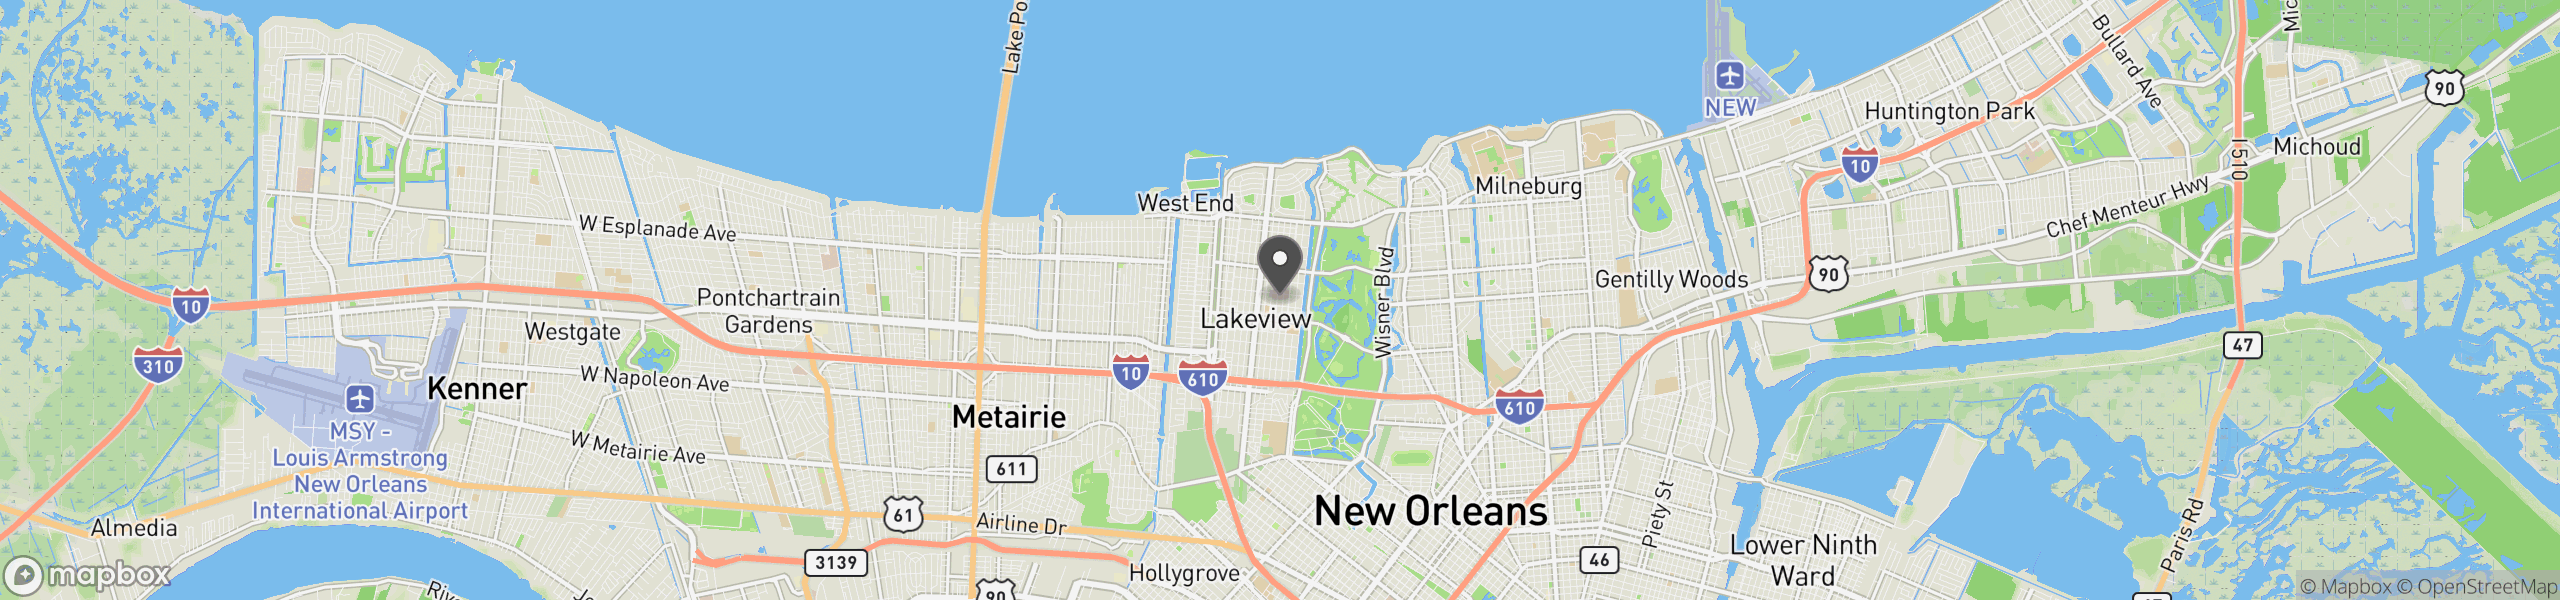 New Orleans, LA 70124